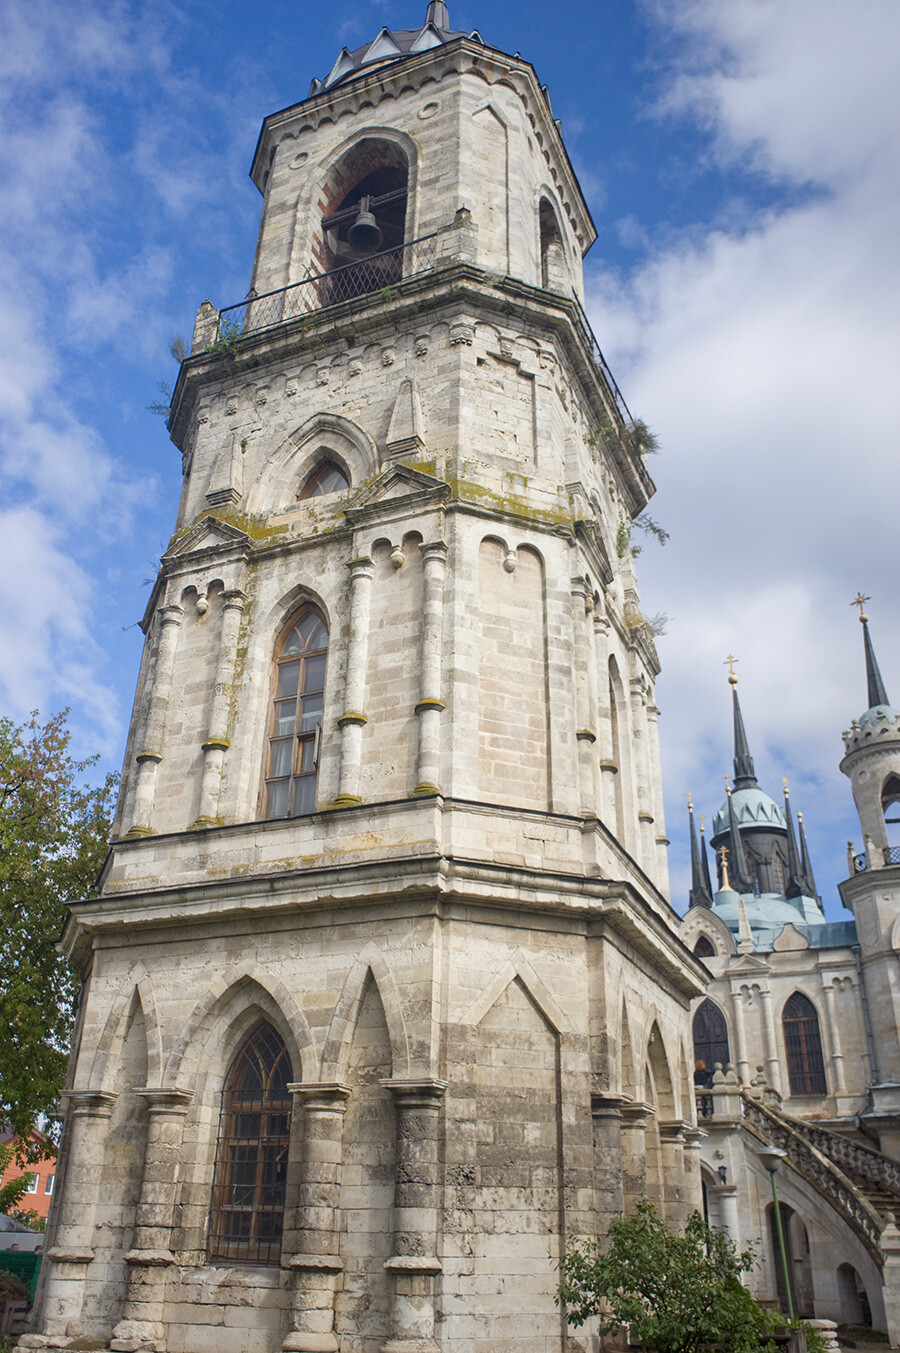 Clocher néo-gothique, église de l’icône de la Vierge de Vladimir, vue sud-ouest